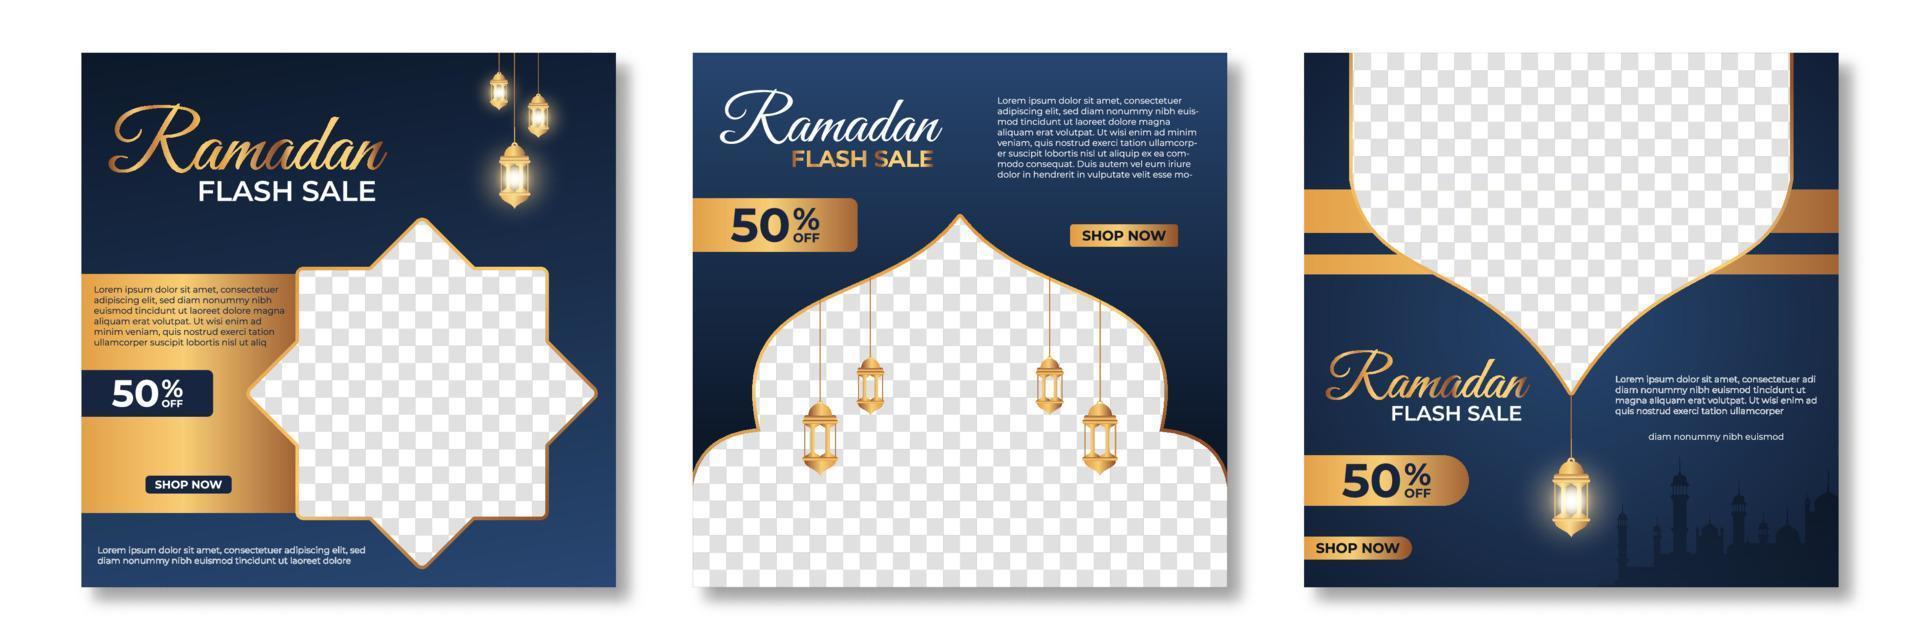 Satz von Banner-Vorlagen für den Ramadan-Verkauf. Ramadan Sale Banner Template Design mit Fotocollage. geeignet für Social-Media-Post- und Web-Internet-Anzeigen. Vektor-Illustration vektor